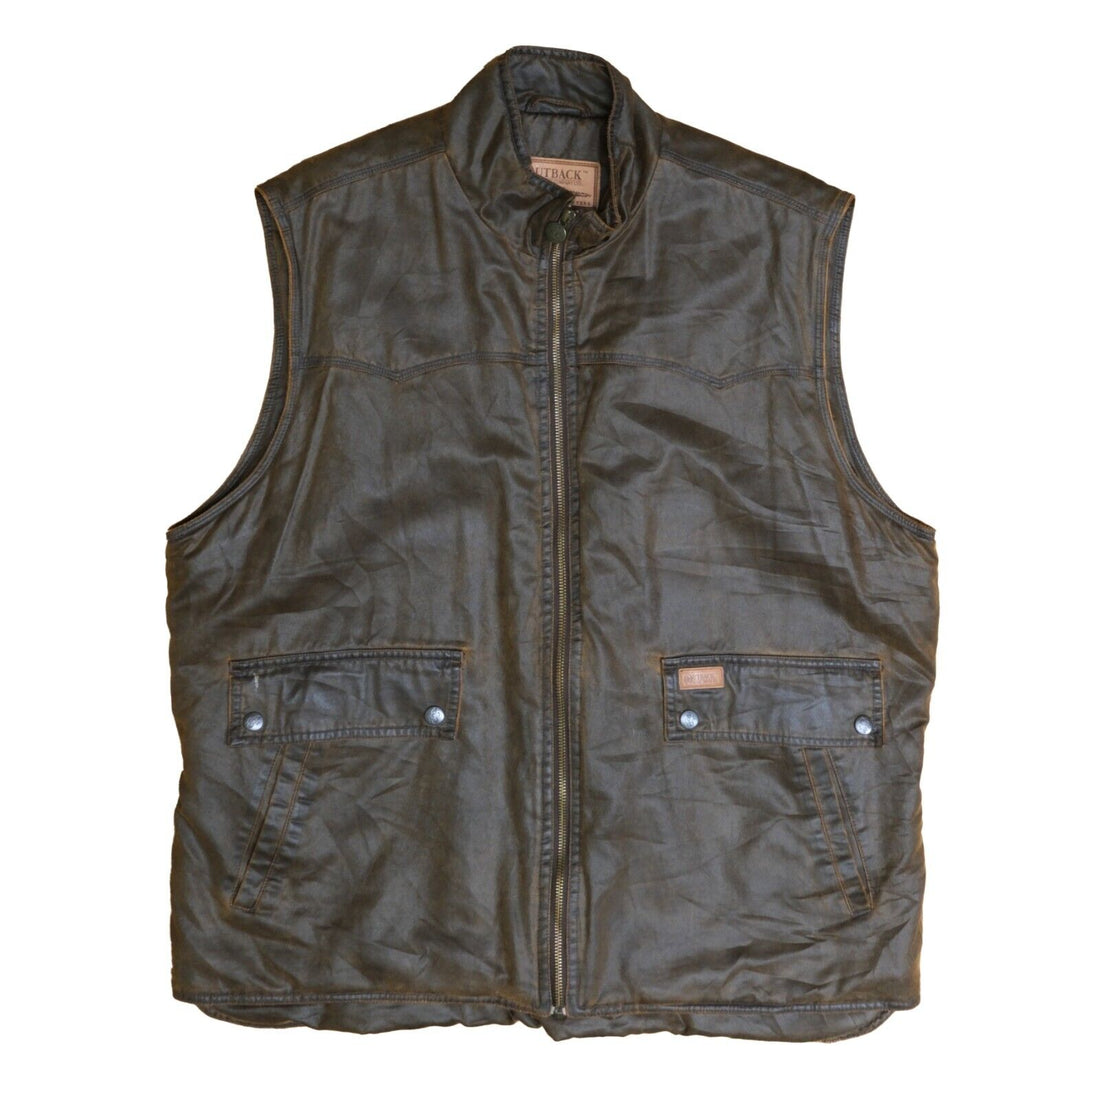 Vintage Outback Trading Wax Vest Jacket Size Large Brown